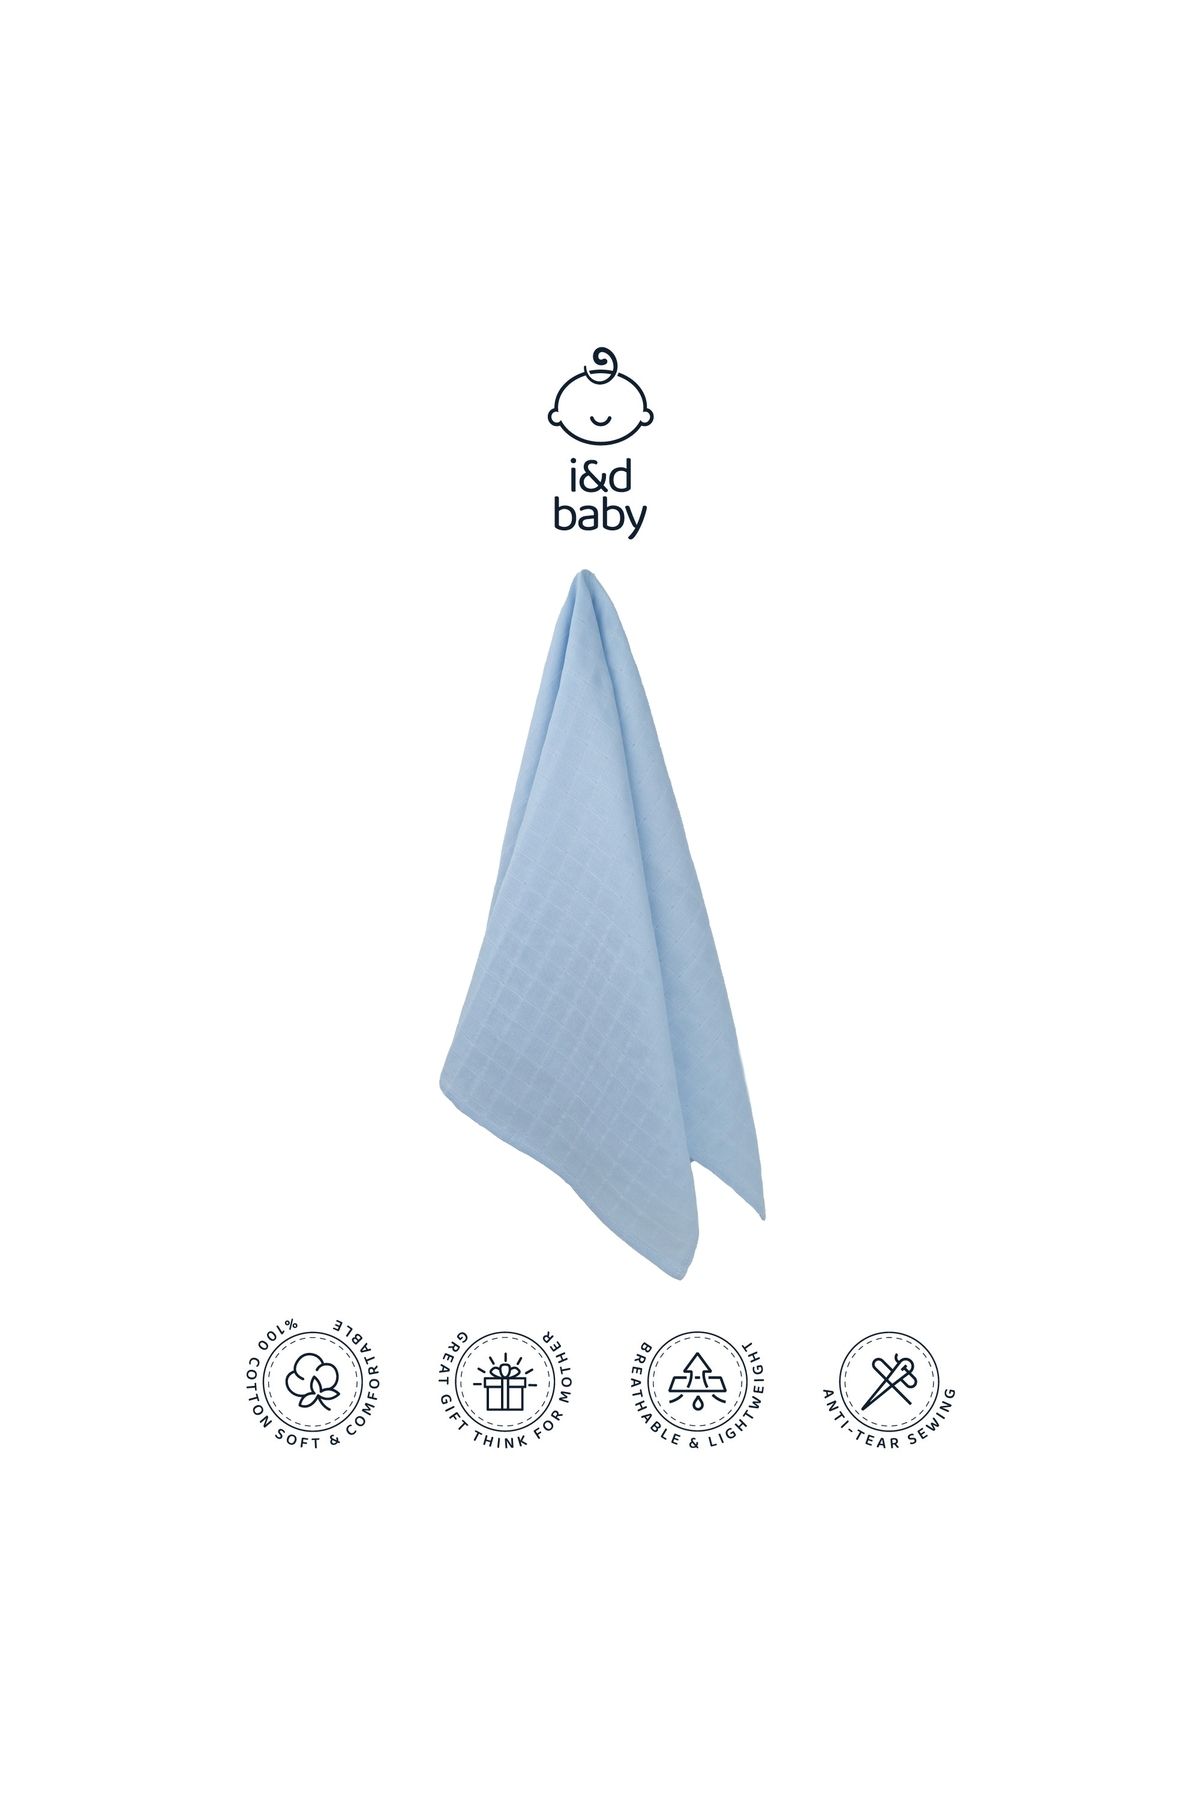 İ&DBABY 1 Adet Mavi Renk 75X75 cm %100 Pamuk Tek Katlı Müslin Kumaş Bebek Örtüsü.